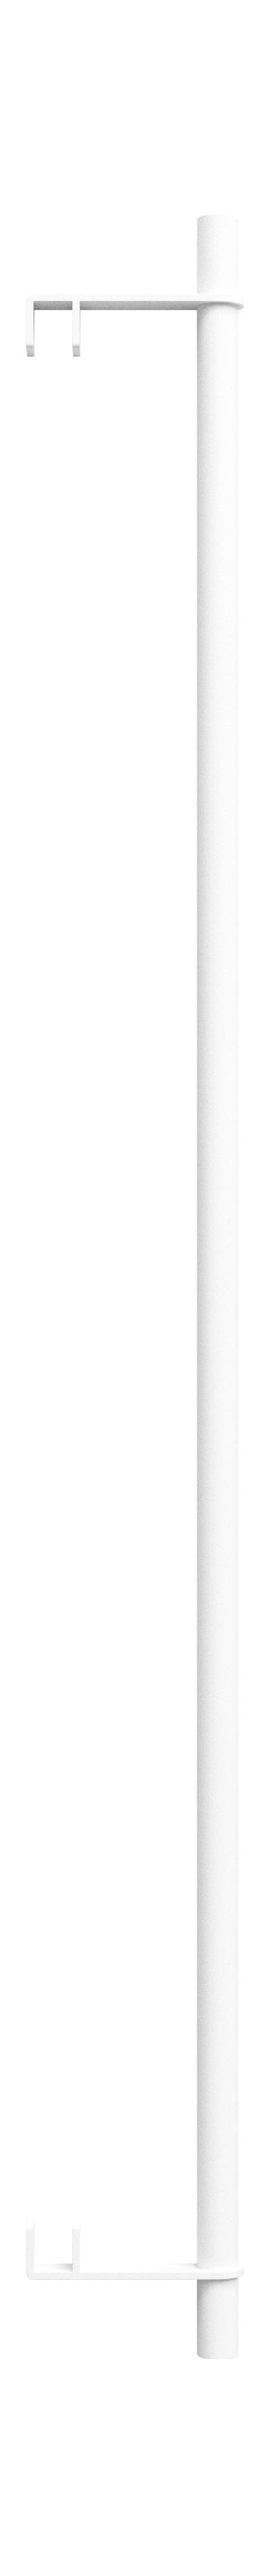 Système de étagères MOEBE / SERPLES MURS Bar 85 cm, blanc